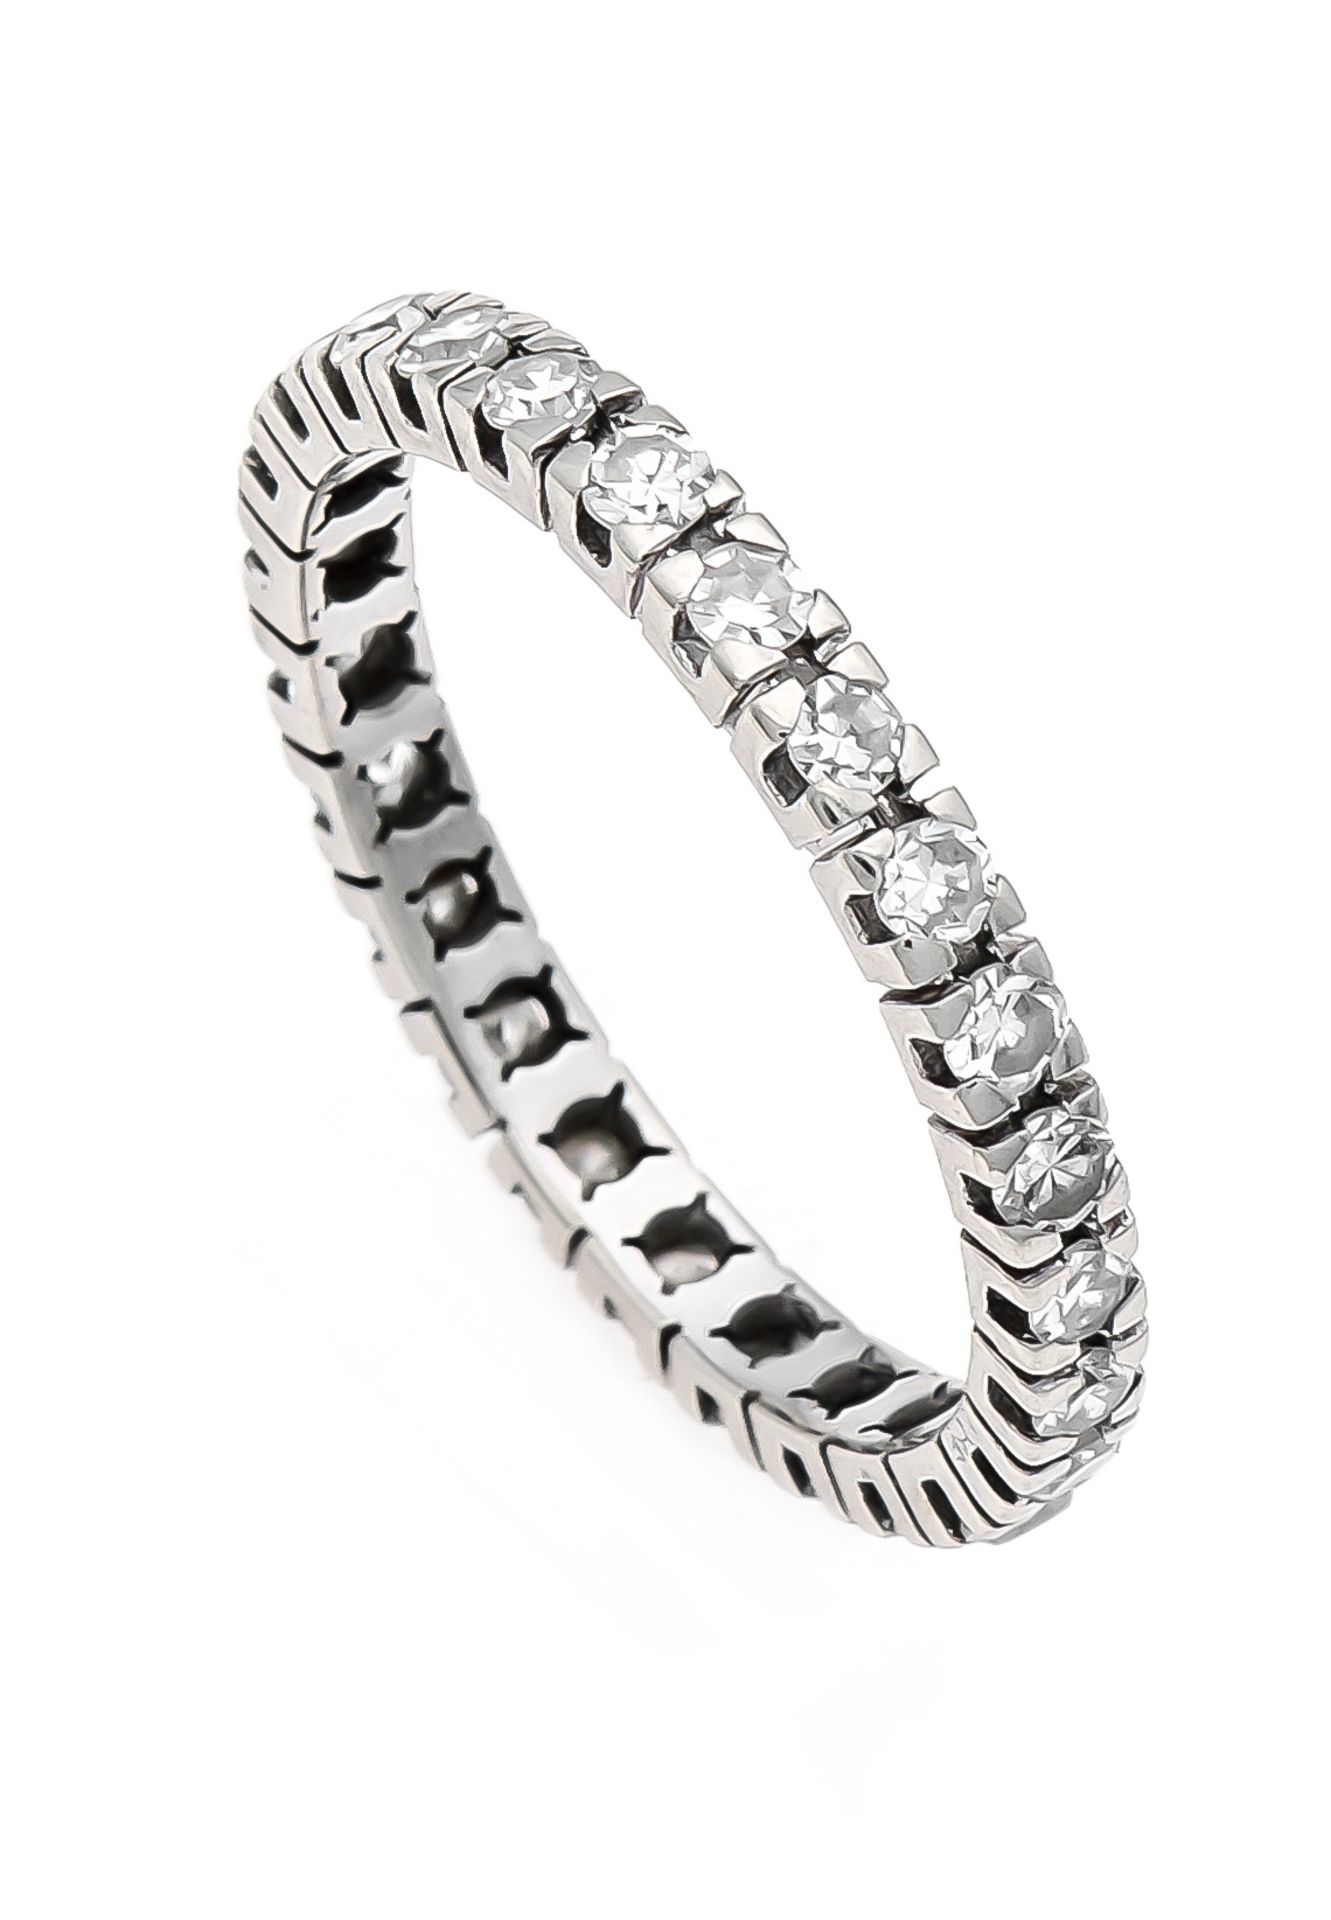 Brillant-Ring WG 585/000 rundherum mit Diamanten, zus. 0,50 ct W/SI, RG 59, 2,2 gMindestpreis: 120